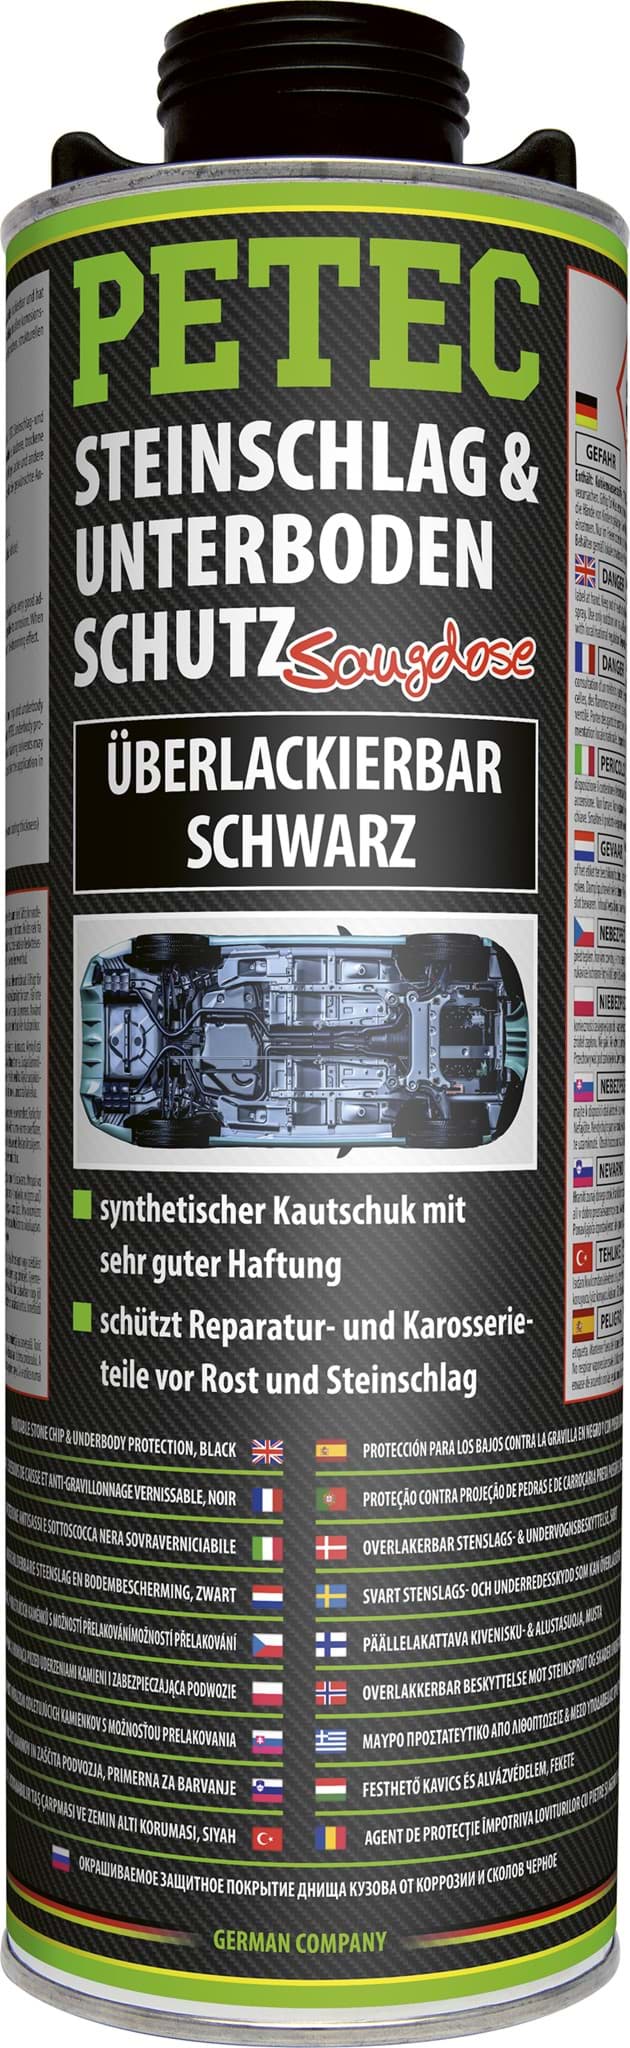 Picture of Petec Unterbodenschutz UBS schwarz überlackierbar 1liter